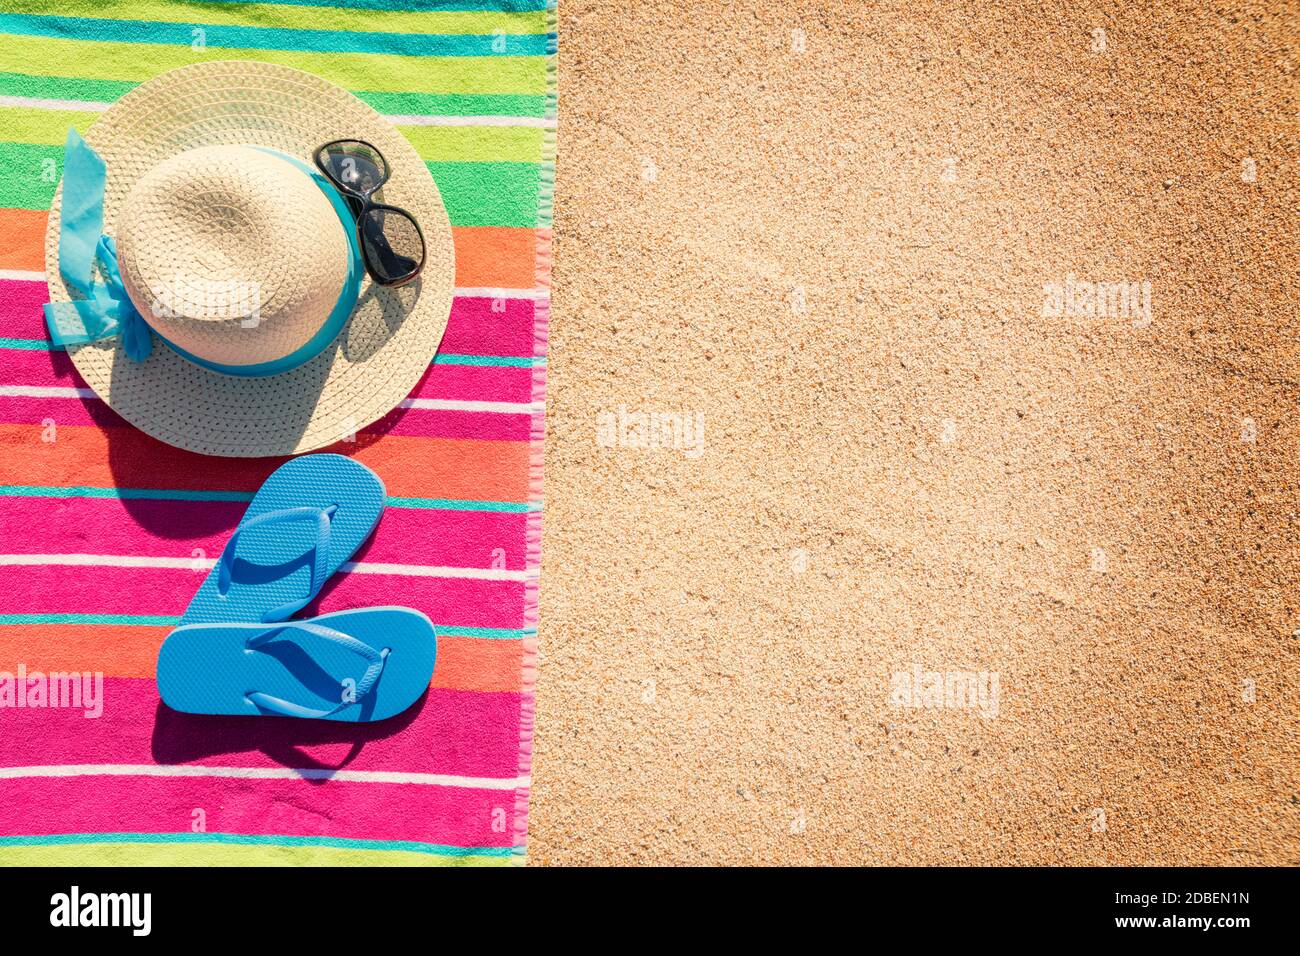 Telo da spiaggia con cappello, occhiali da sole e infradito fotografato dall'alto sulla spiaggia di sabbia, caldi accessori estivi, destinazione di vacanza, soleggiata spiaggia tropicale sfondo Foto Stock